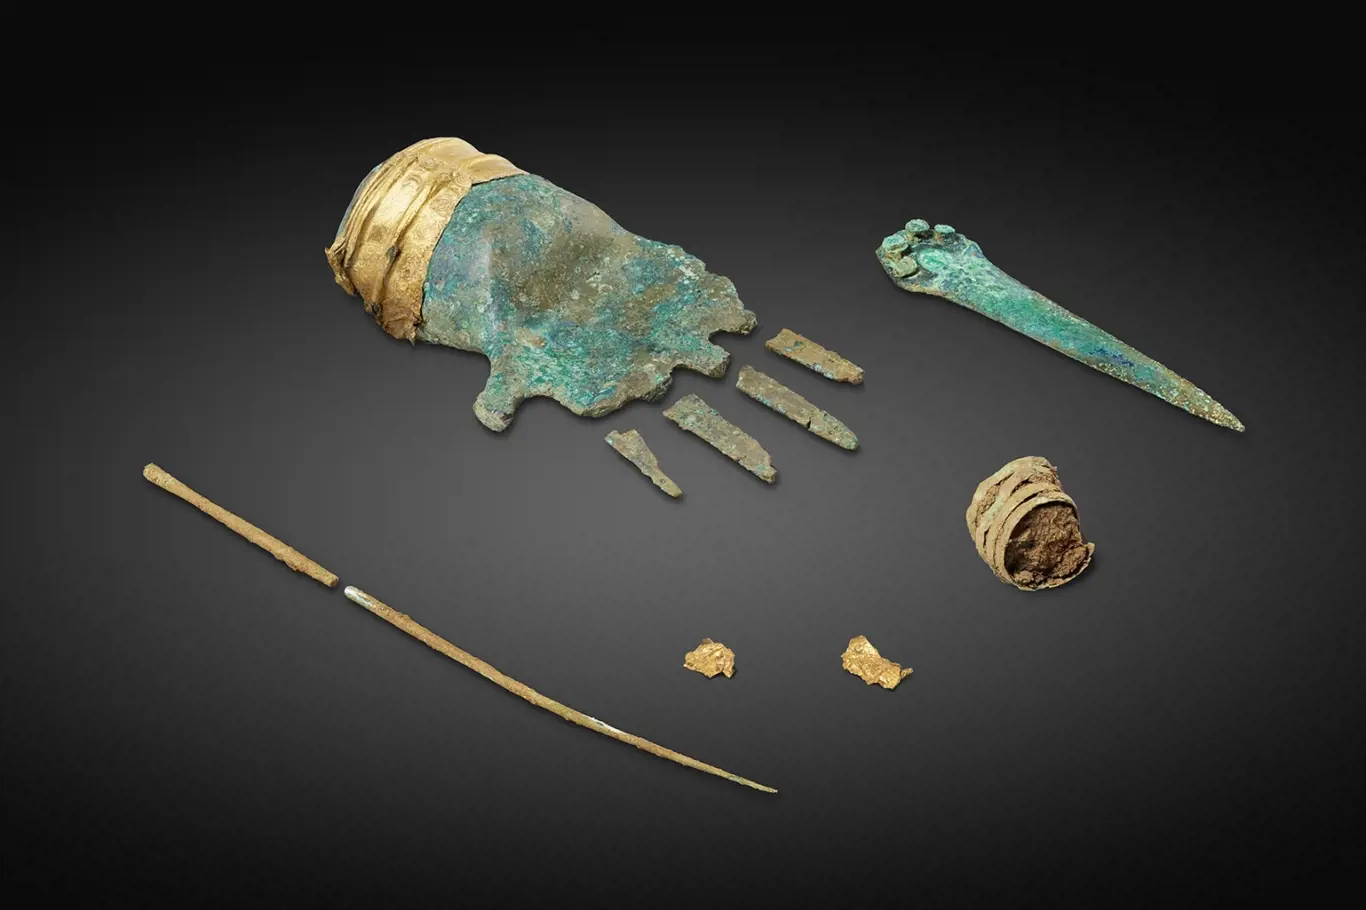 bronzová ruka a další artefakty nalezené v hrobě.